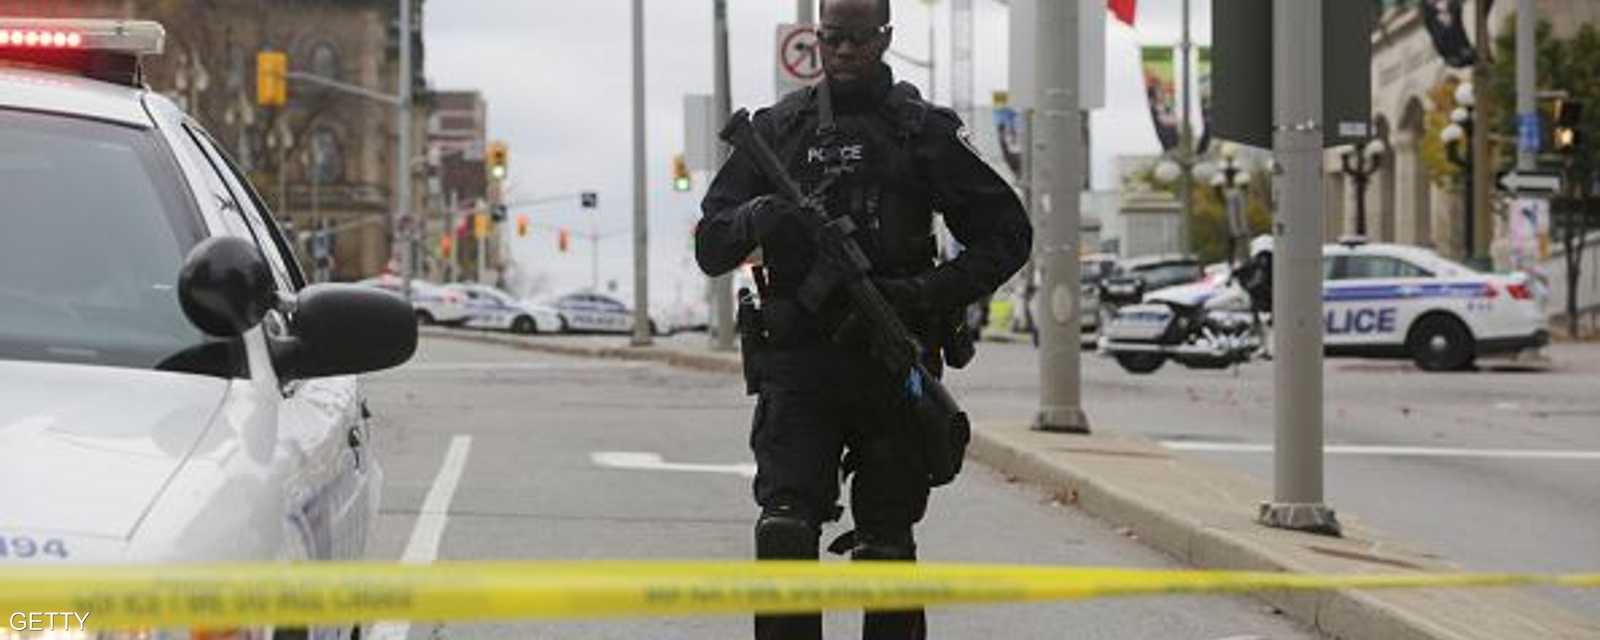 شرطي من القوات الخاصة خلف أحد الحواجز المحيطة بالبرلمان الكندي